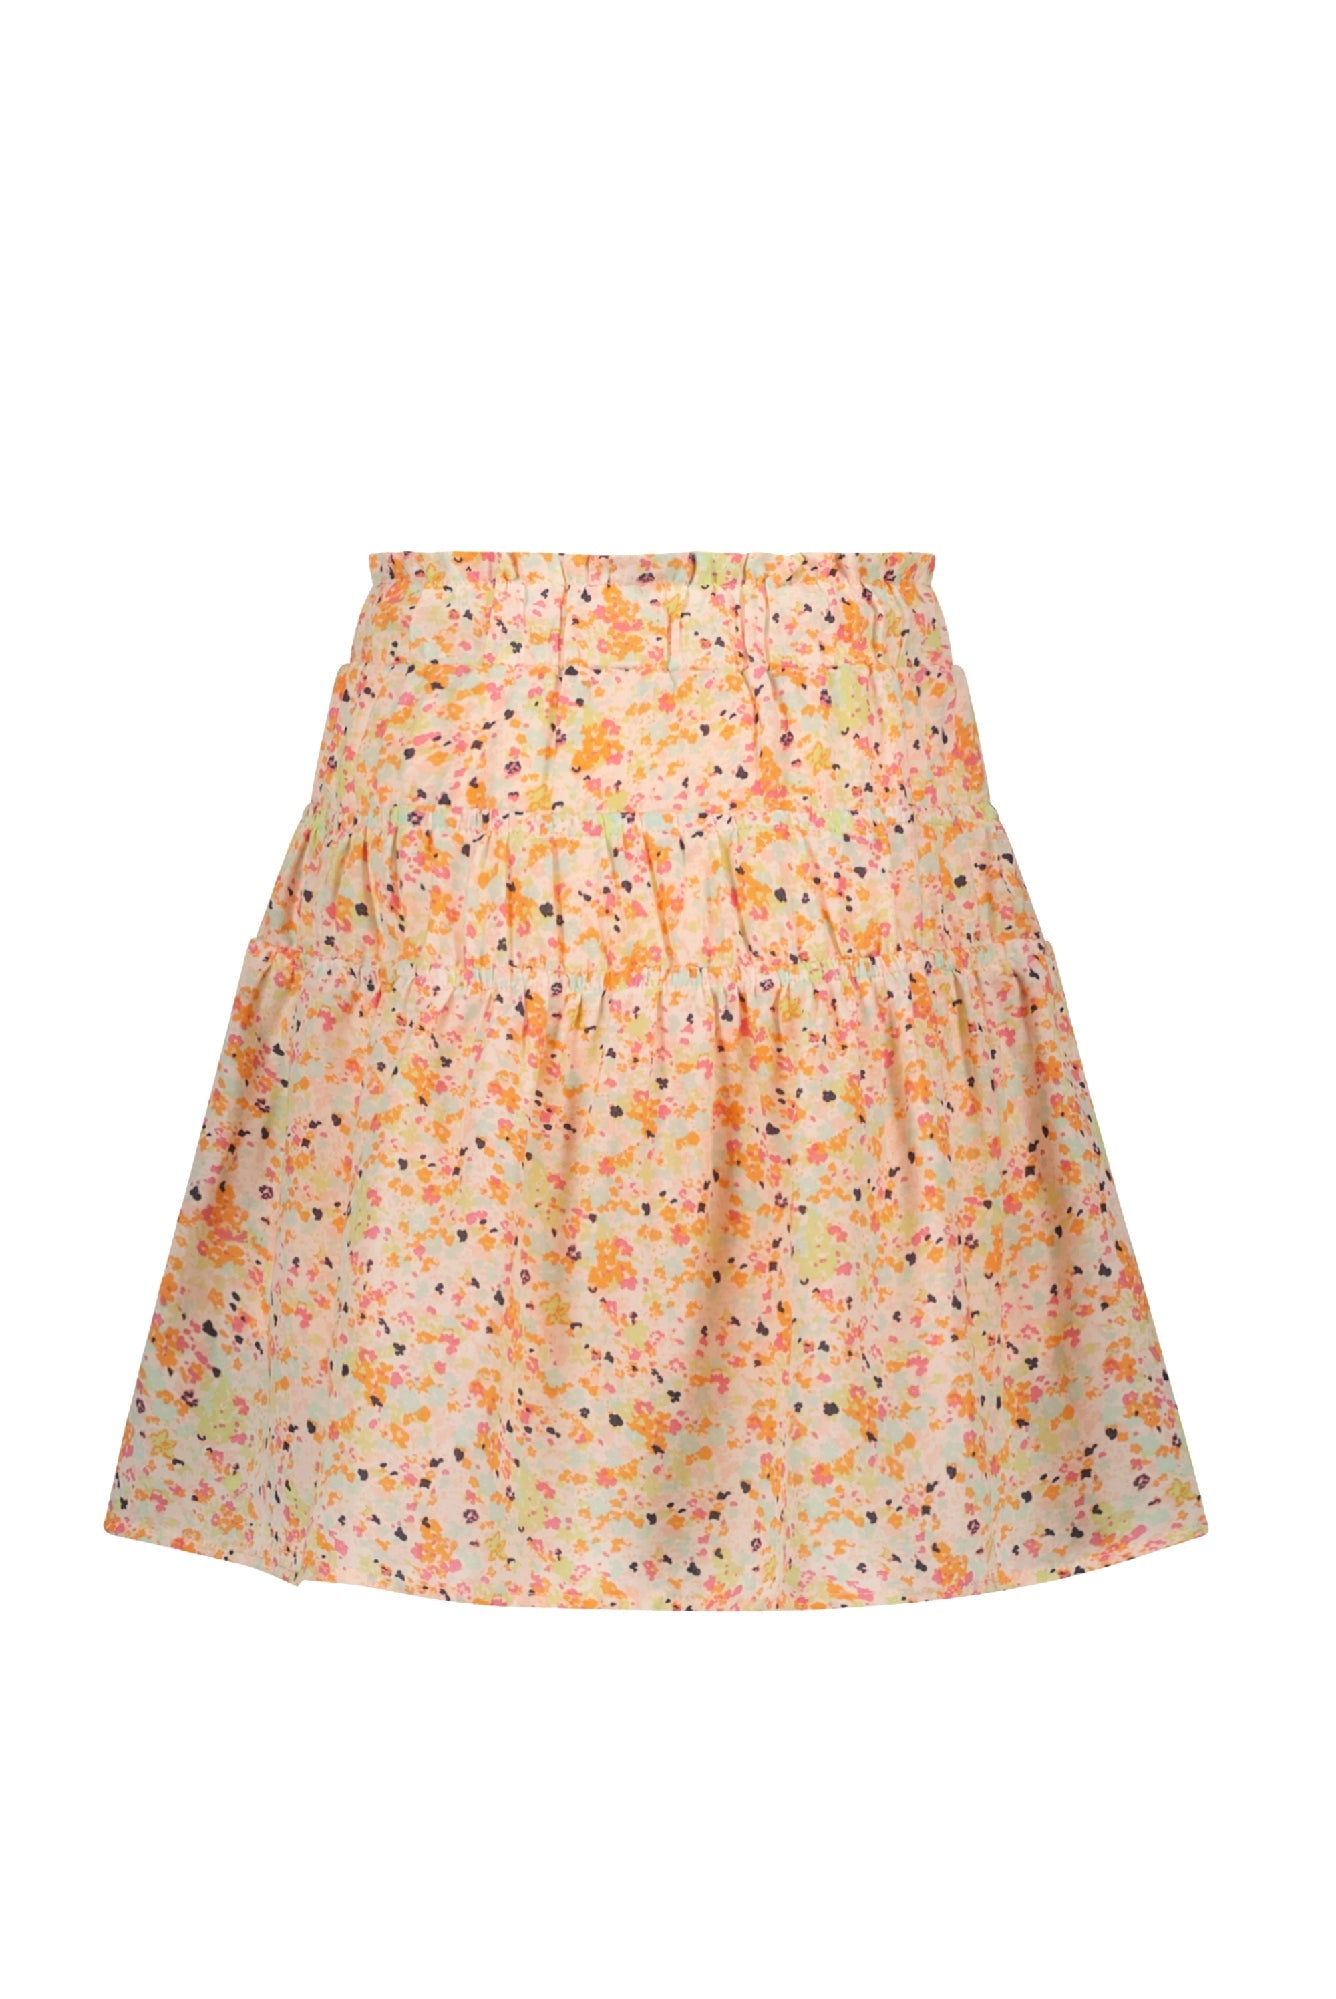 Meisjes Nellie skirt short with elastic details + short lining van NoNo in de kleur Sour Lime in maat 134-140.